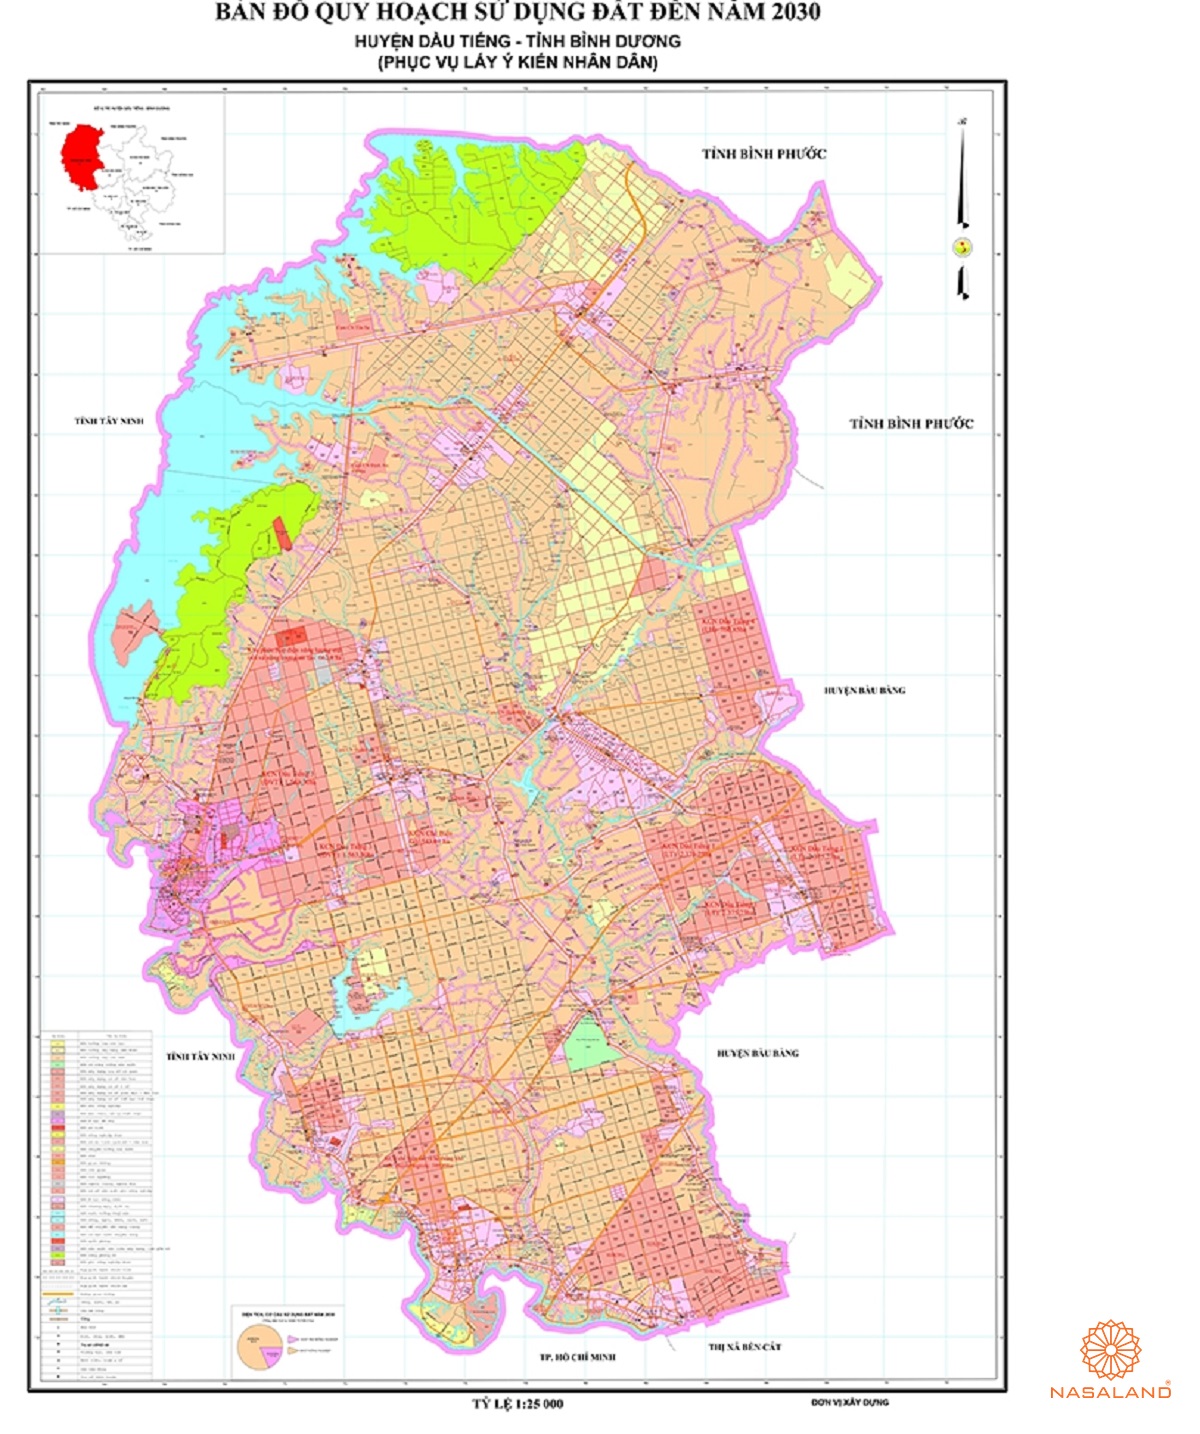 Quy hoạch sử dụng đất Huyện Dầu Tiếng thể hiện trên bản đồ quy hoạch phân khu tỷ lệ 1/2000 của Tỉnh Bình Dương